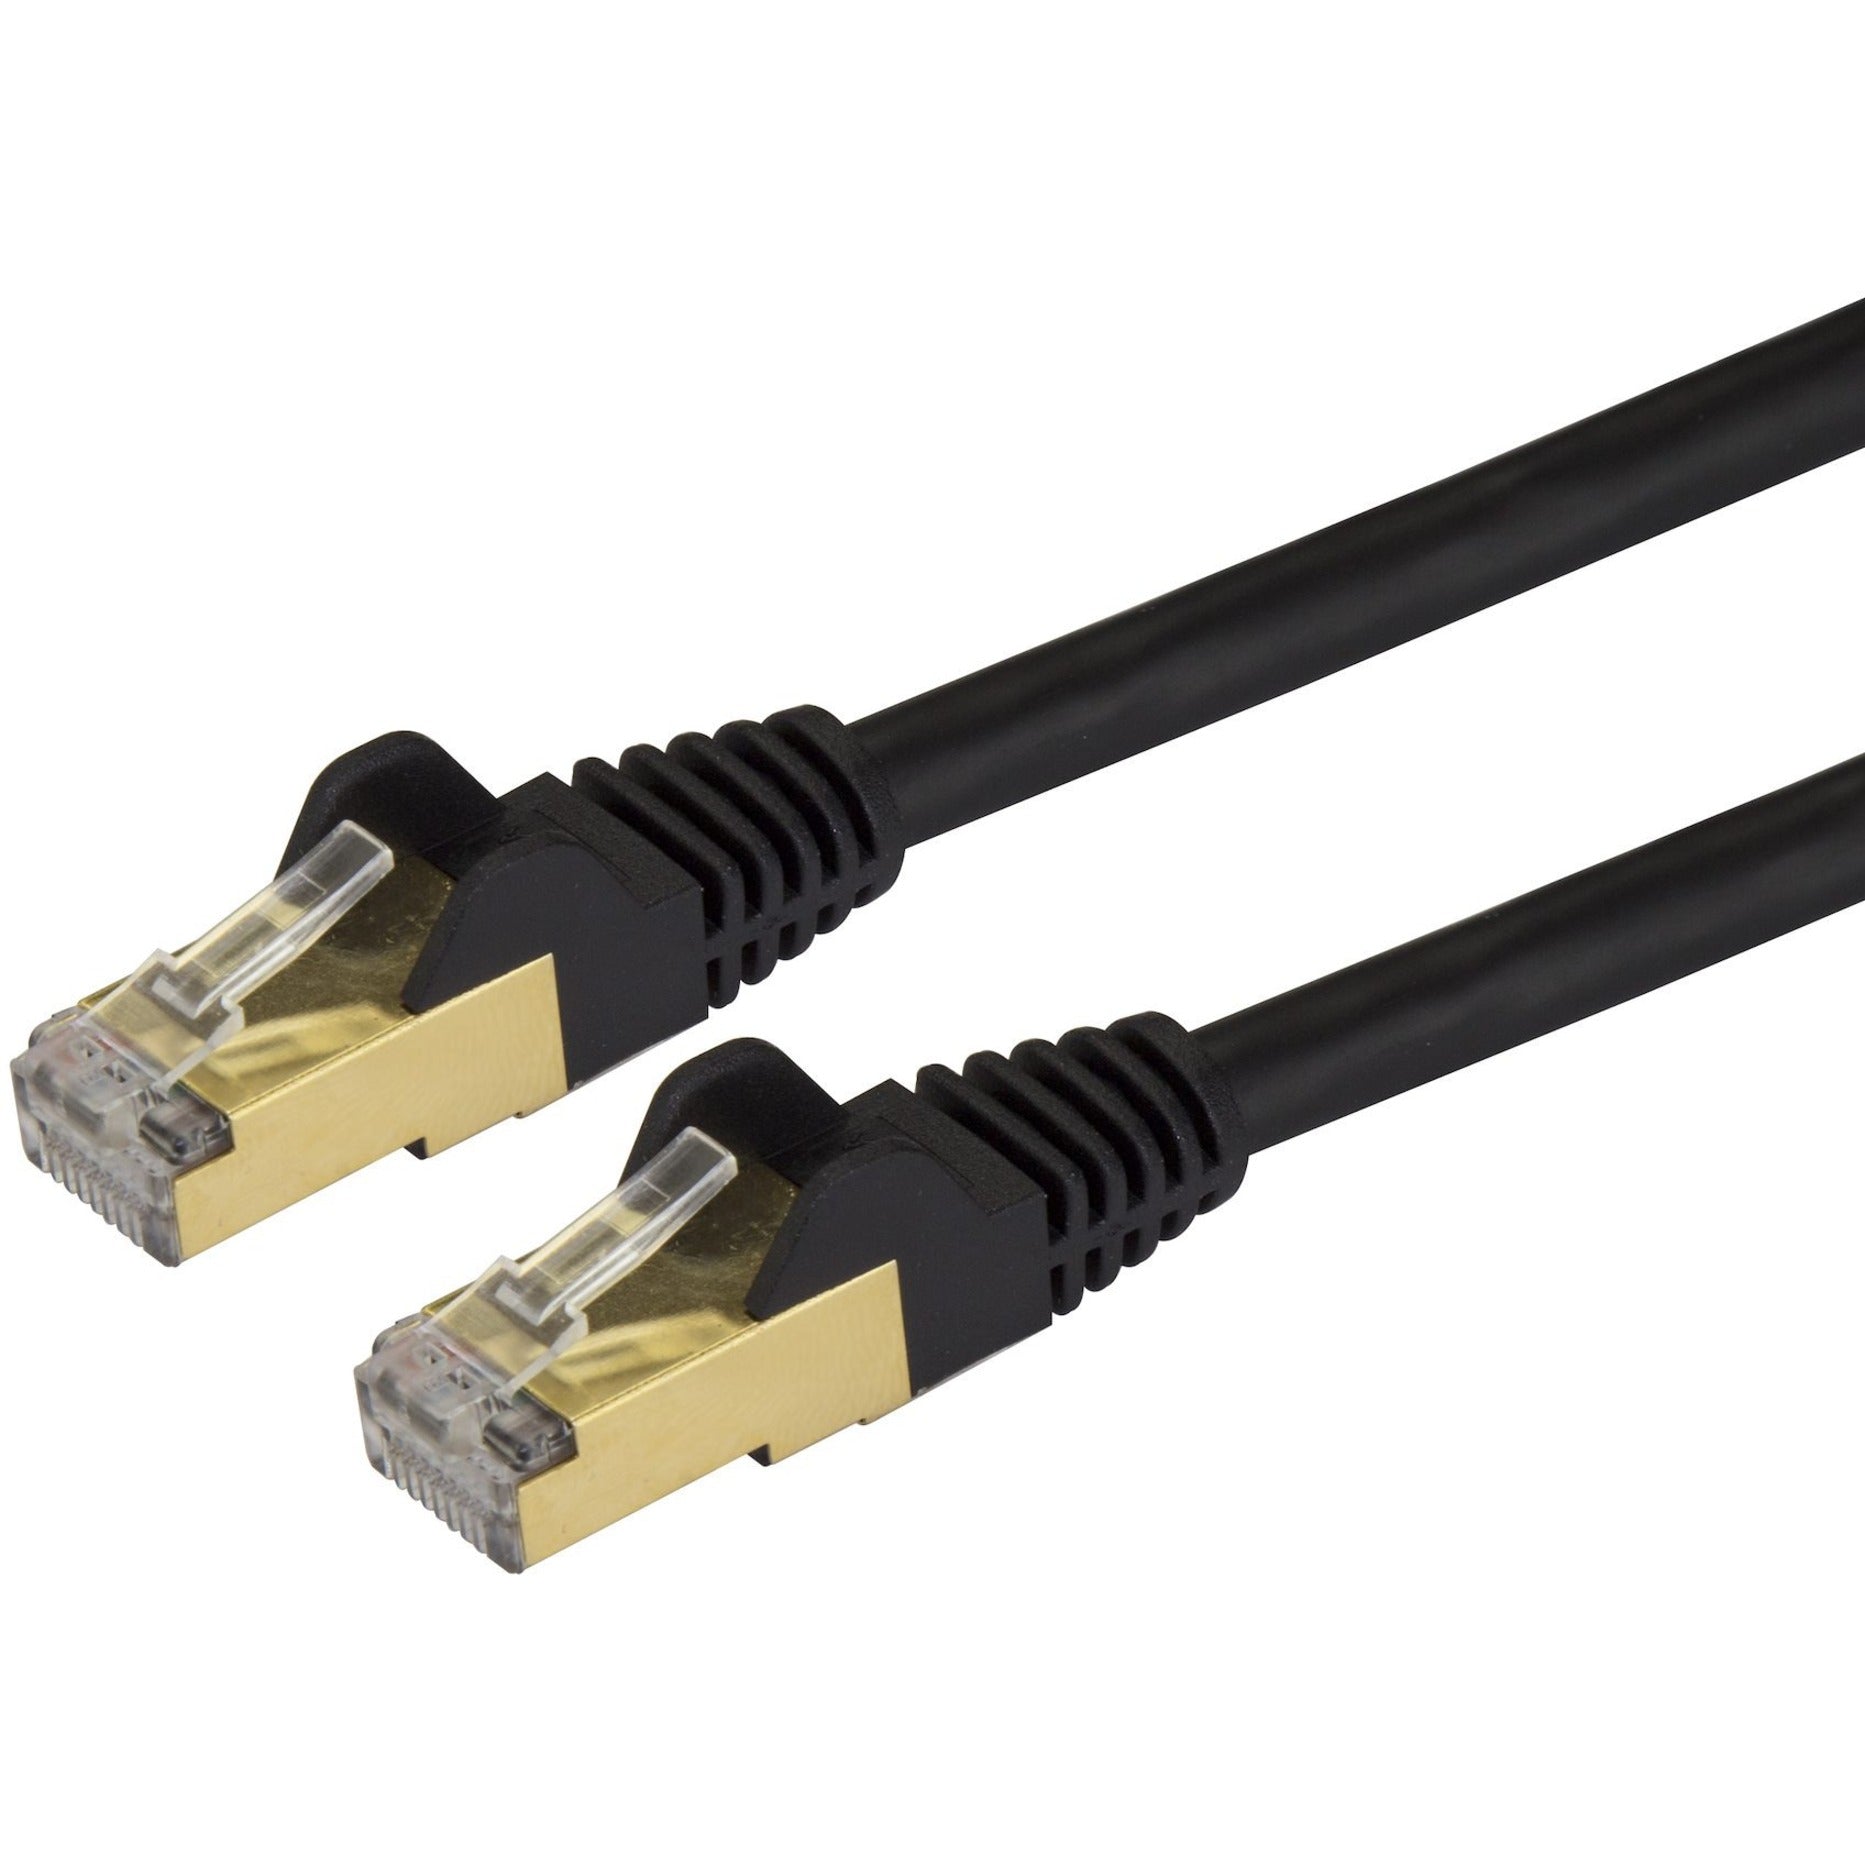 StarTech.com C6ASPAT15BK Cat6a Ethernet Patch Cable - Schermato (STP) - 15 ft. Nero Cavo Ethernet Lungo